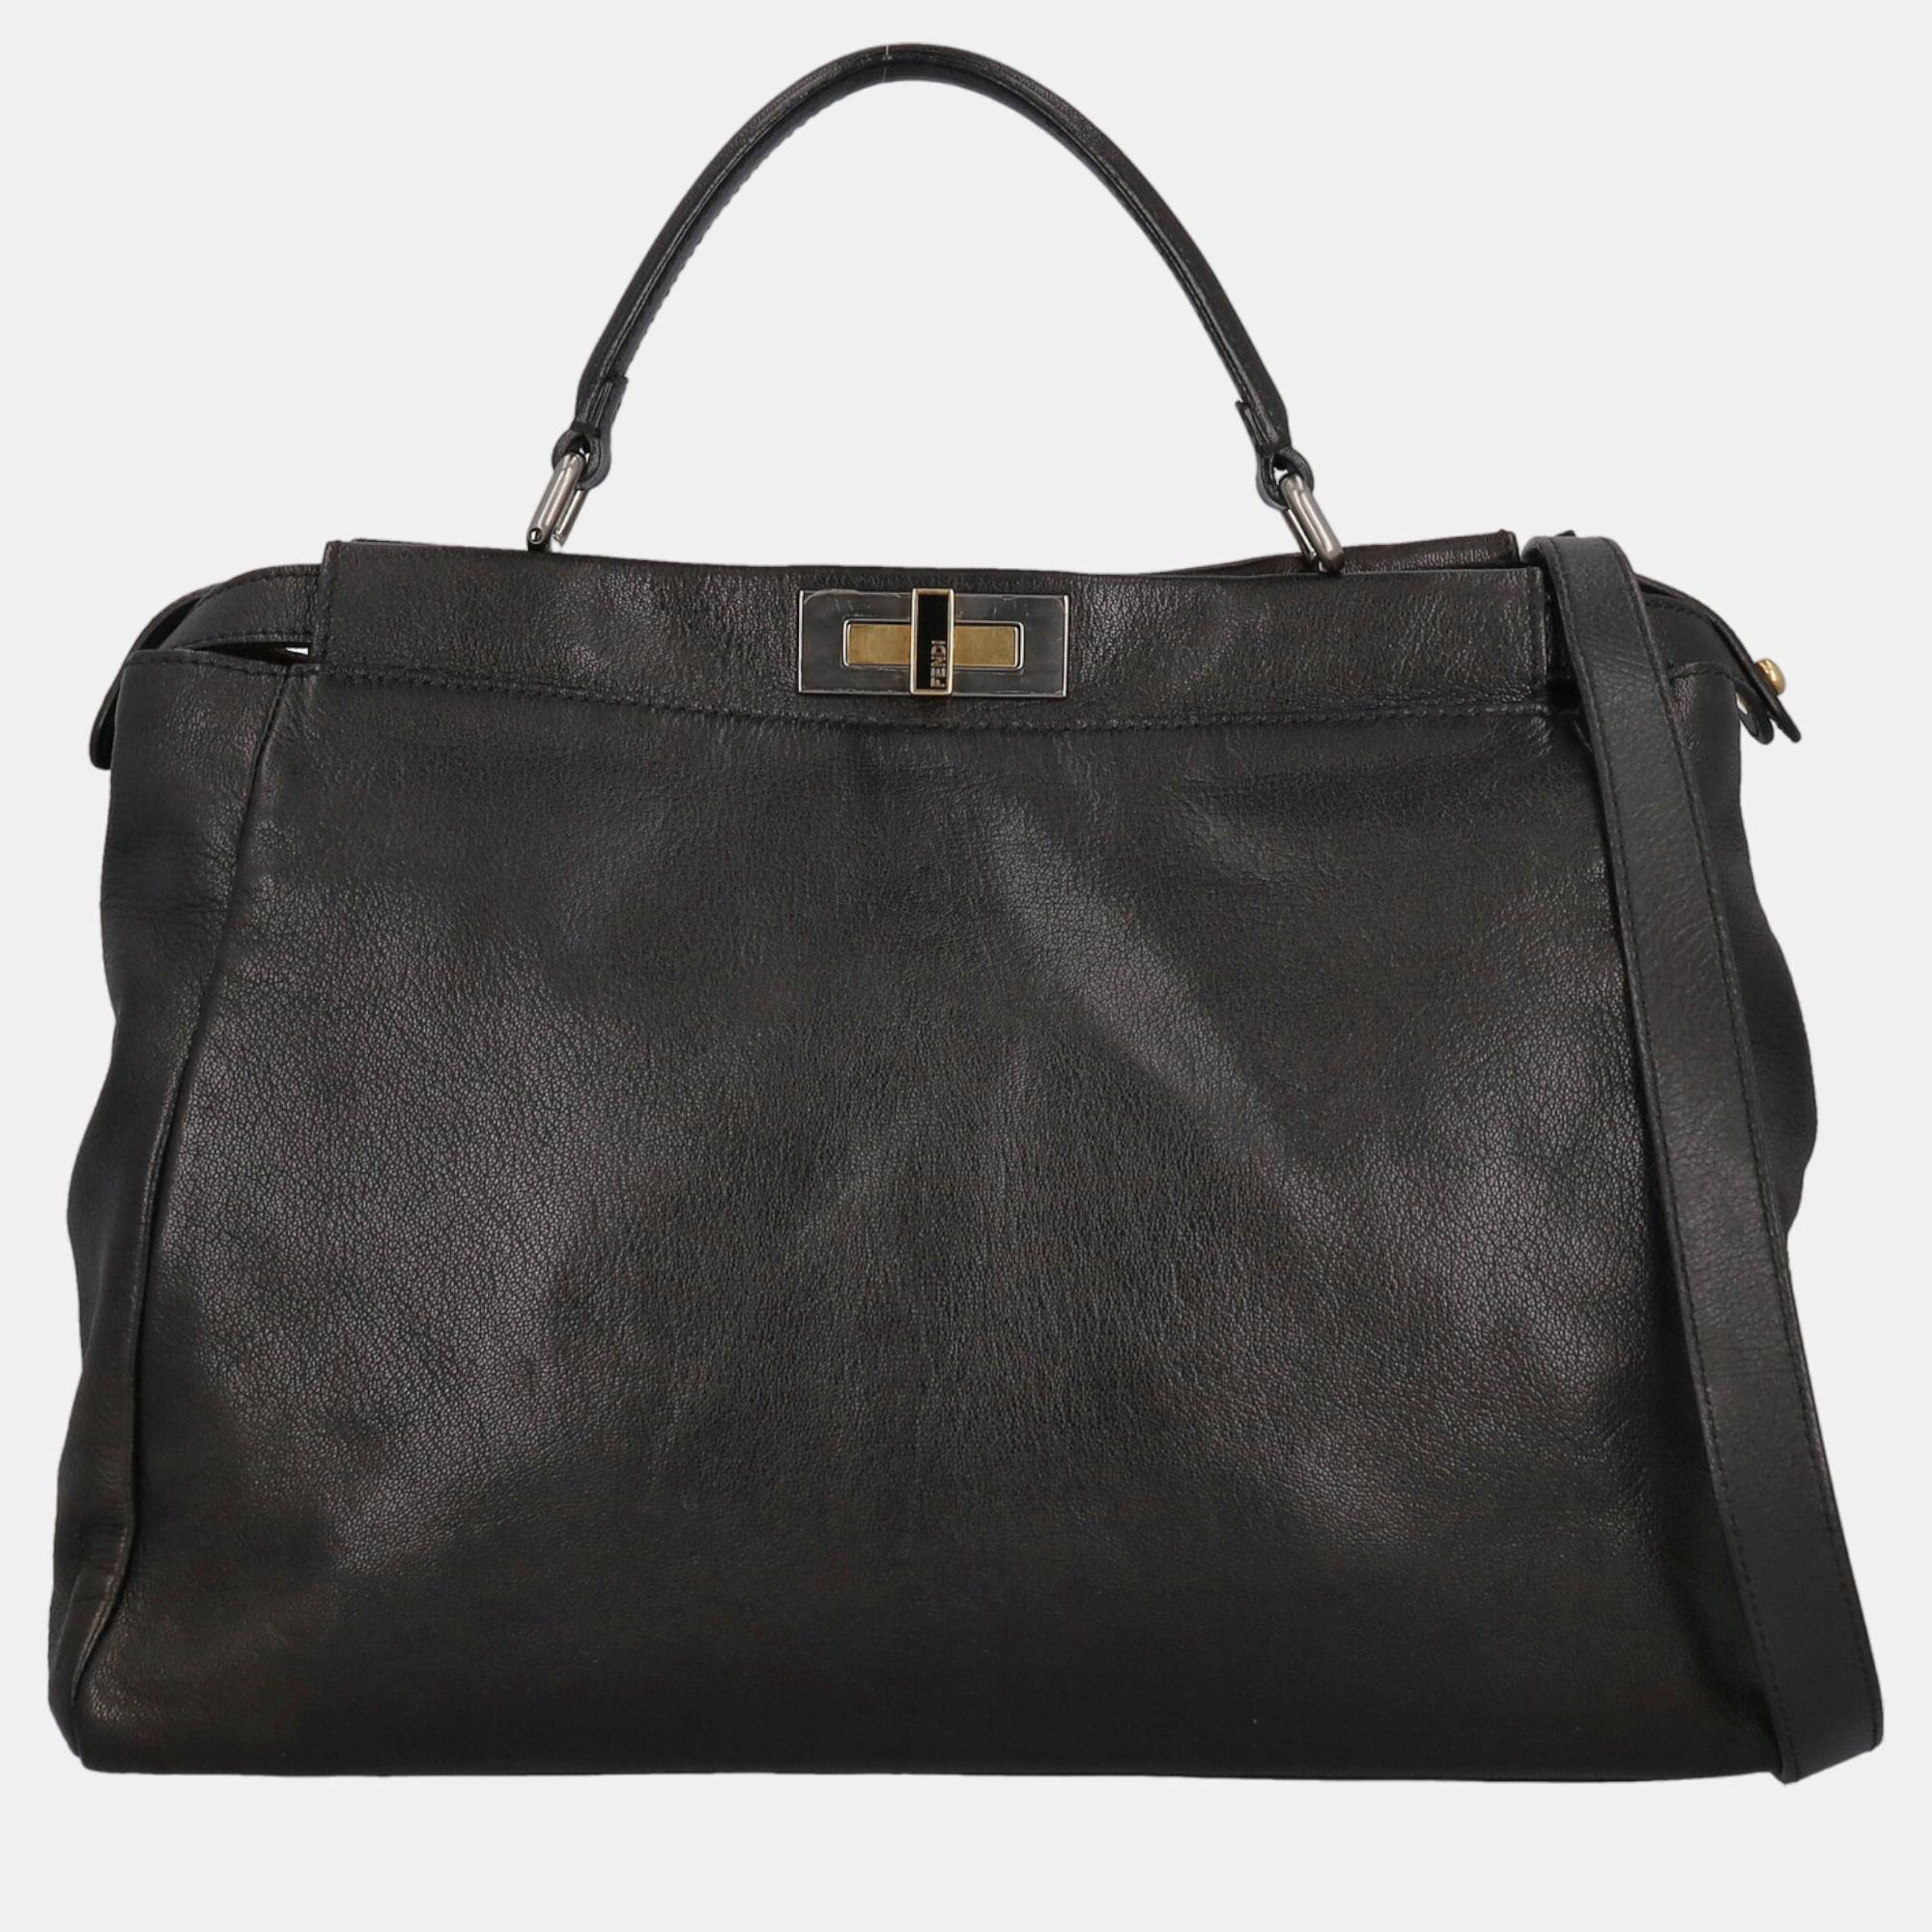 Fendi Peekaboo -  Women's Leather Tote Bag - Black - One Size